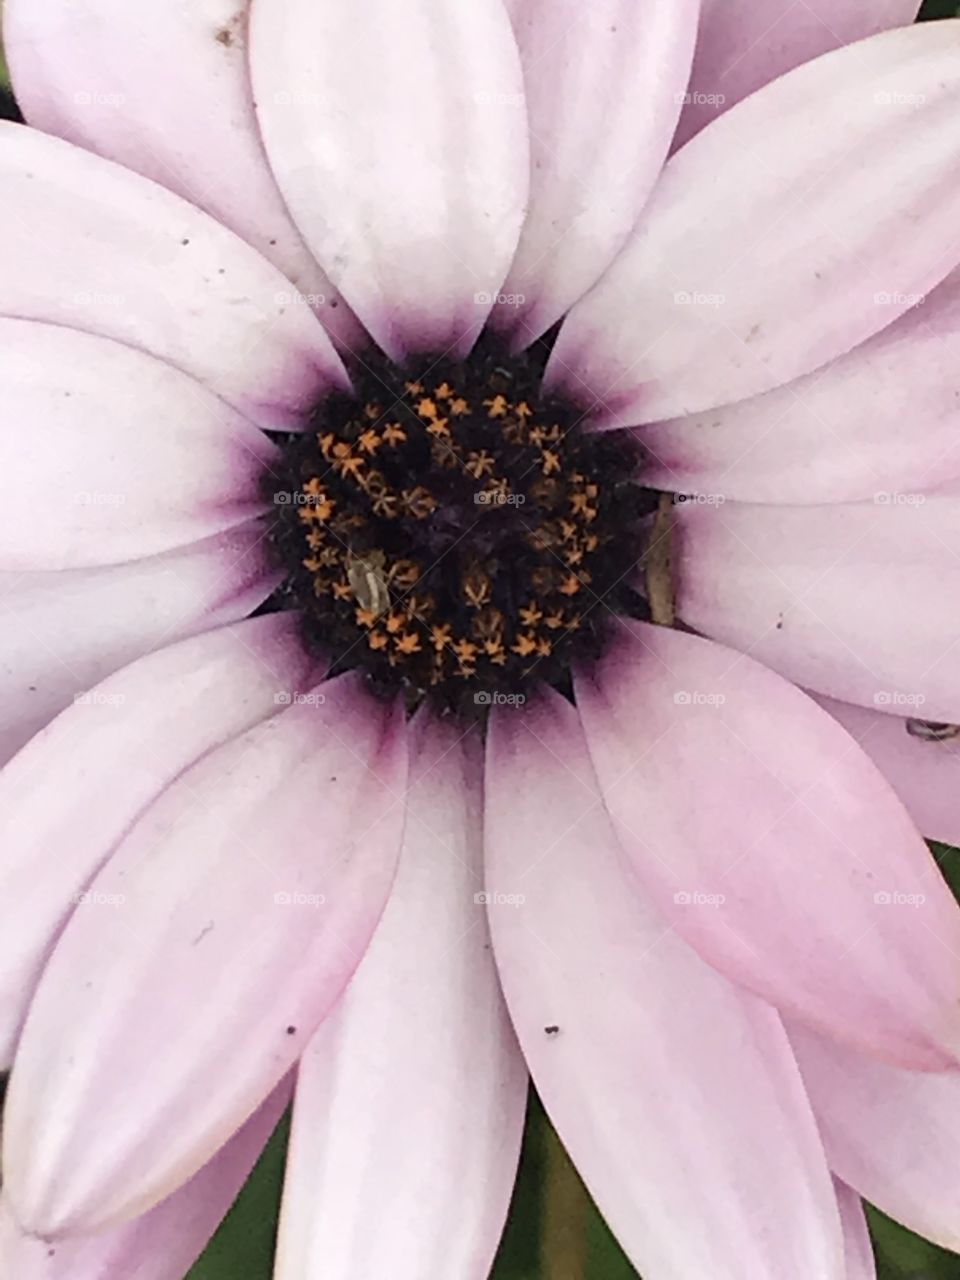 Flowers inside flower 